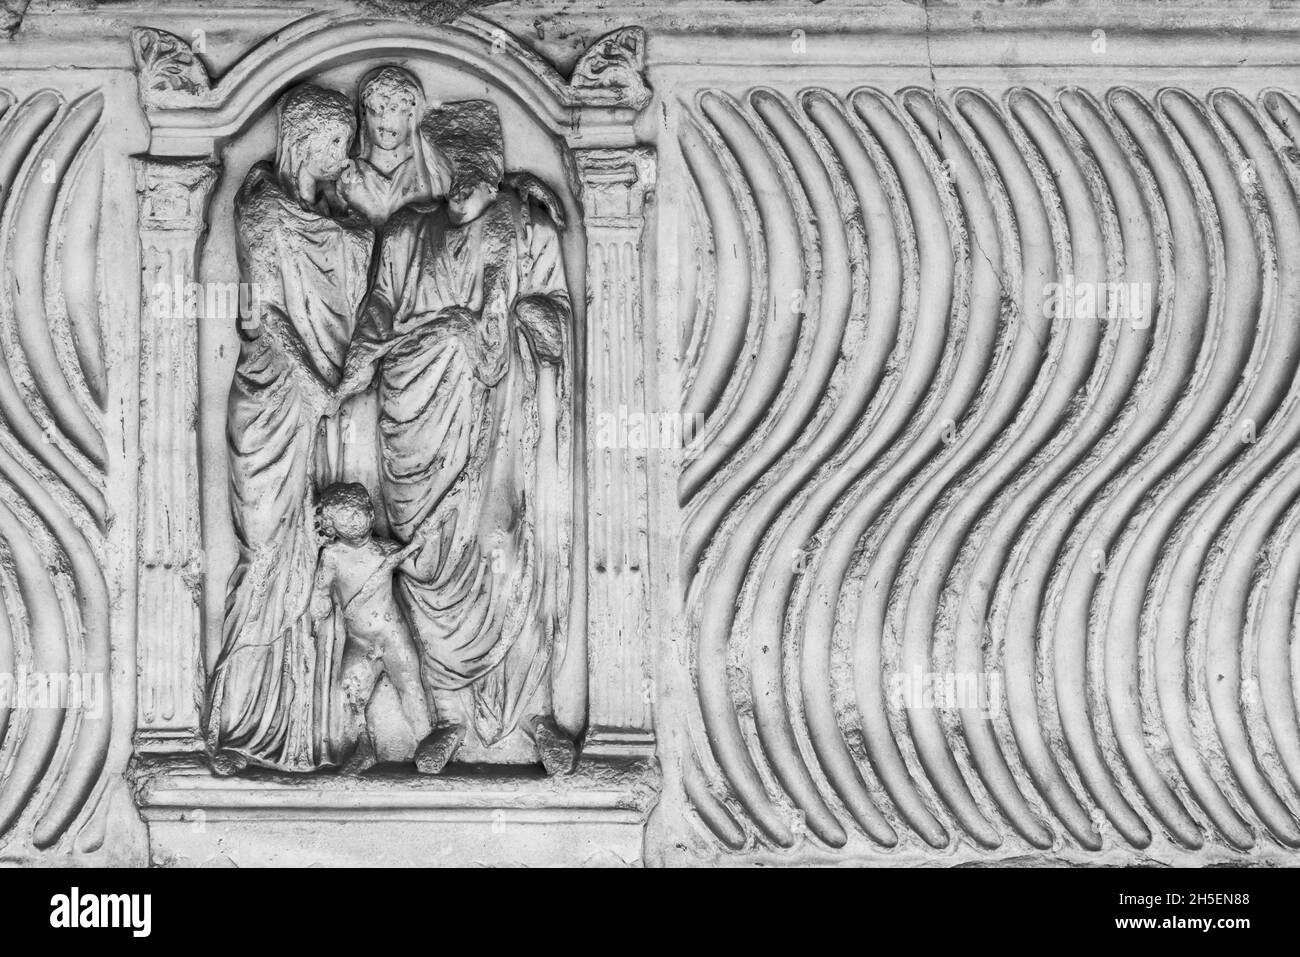 Schwarz-weißes Foto von antiken Skulpturen, die auf einer Marmorwand geschnitzt sind und eine Gruppe römischer Frauen darstellen, die mit einem Kind vereint wurden Stockfoto